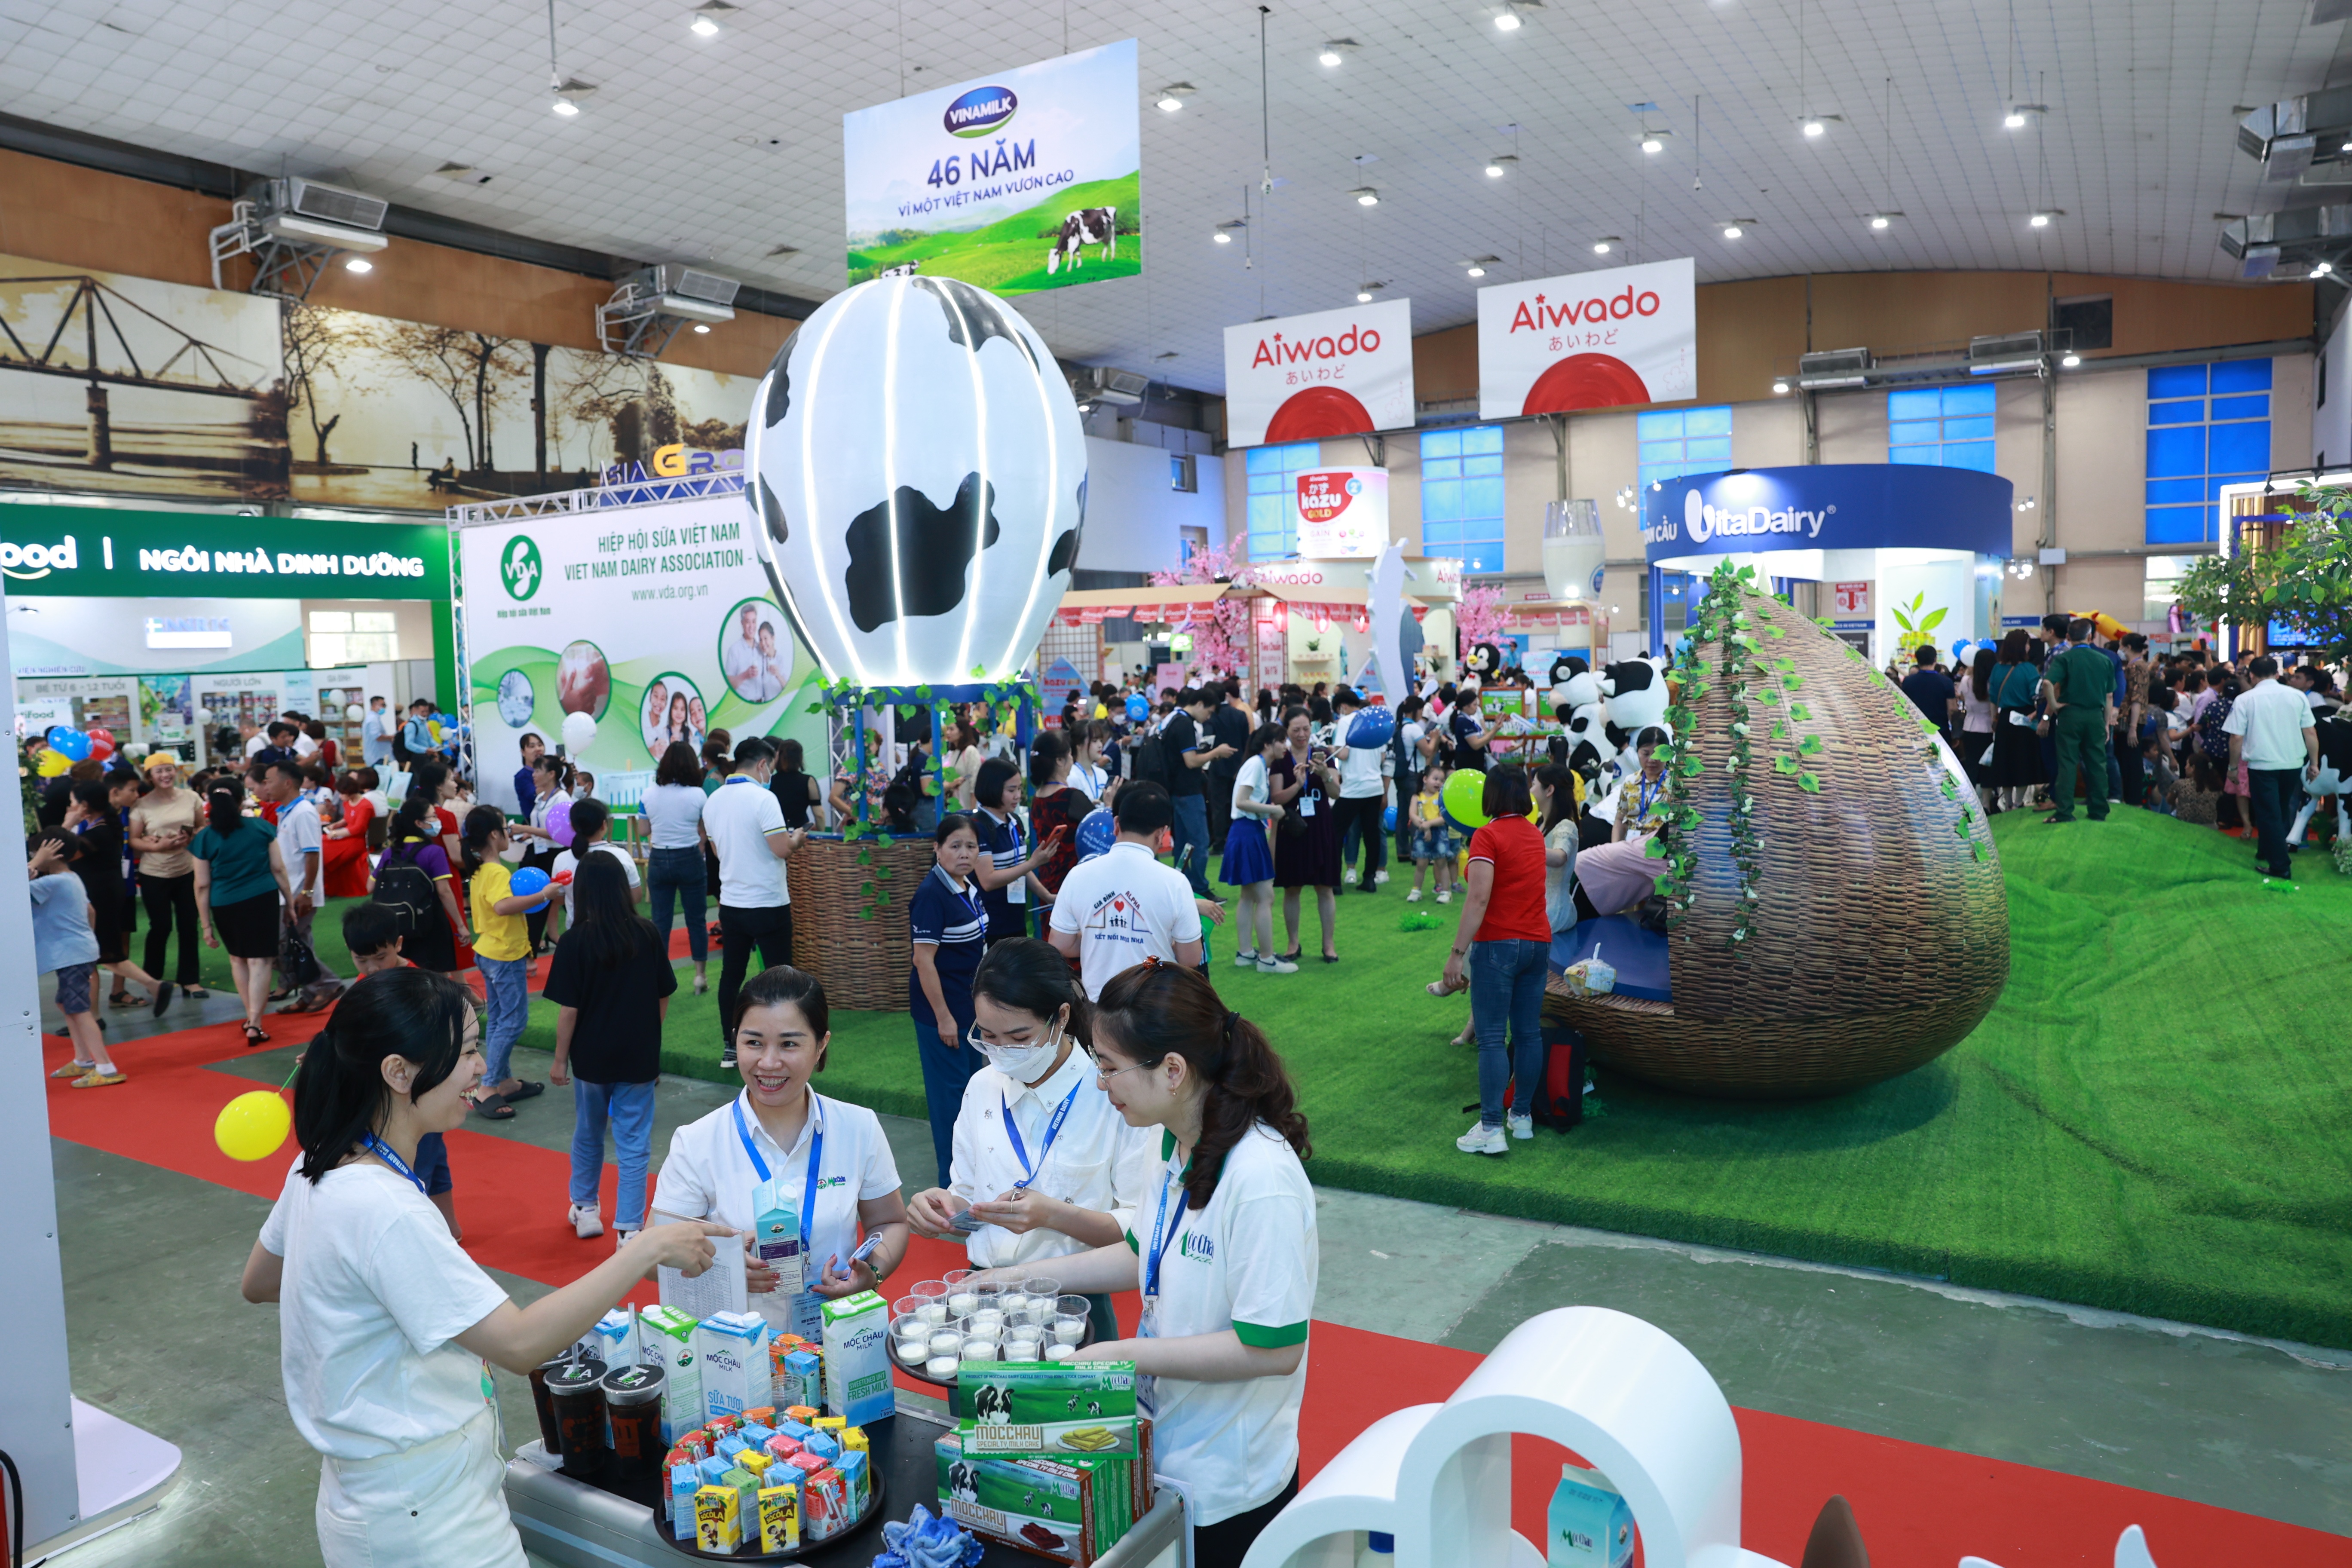  Khách tham quan, người tiêu dùng sẽ được trải nghiệm các sản phẩm sữa của hàng trăm thương hiệu sữa Việt Nam và quốc tế.